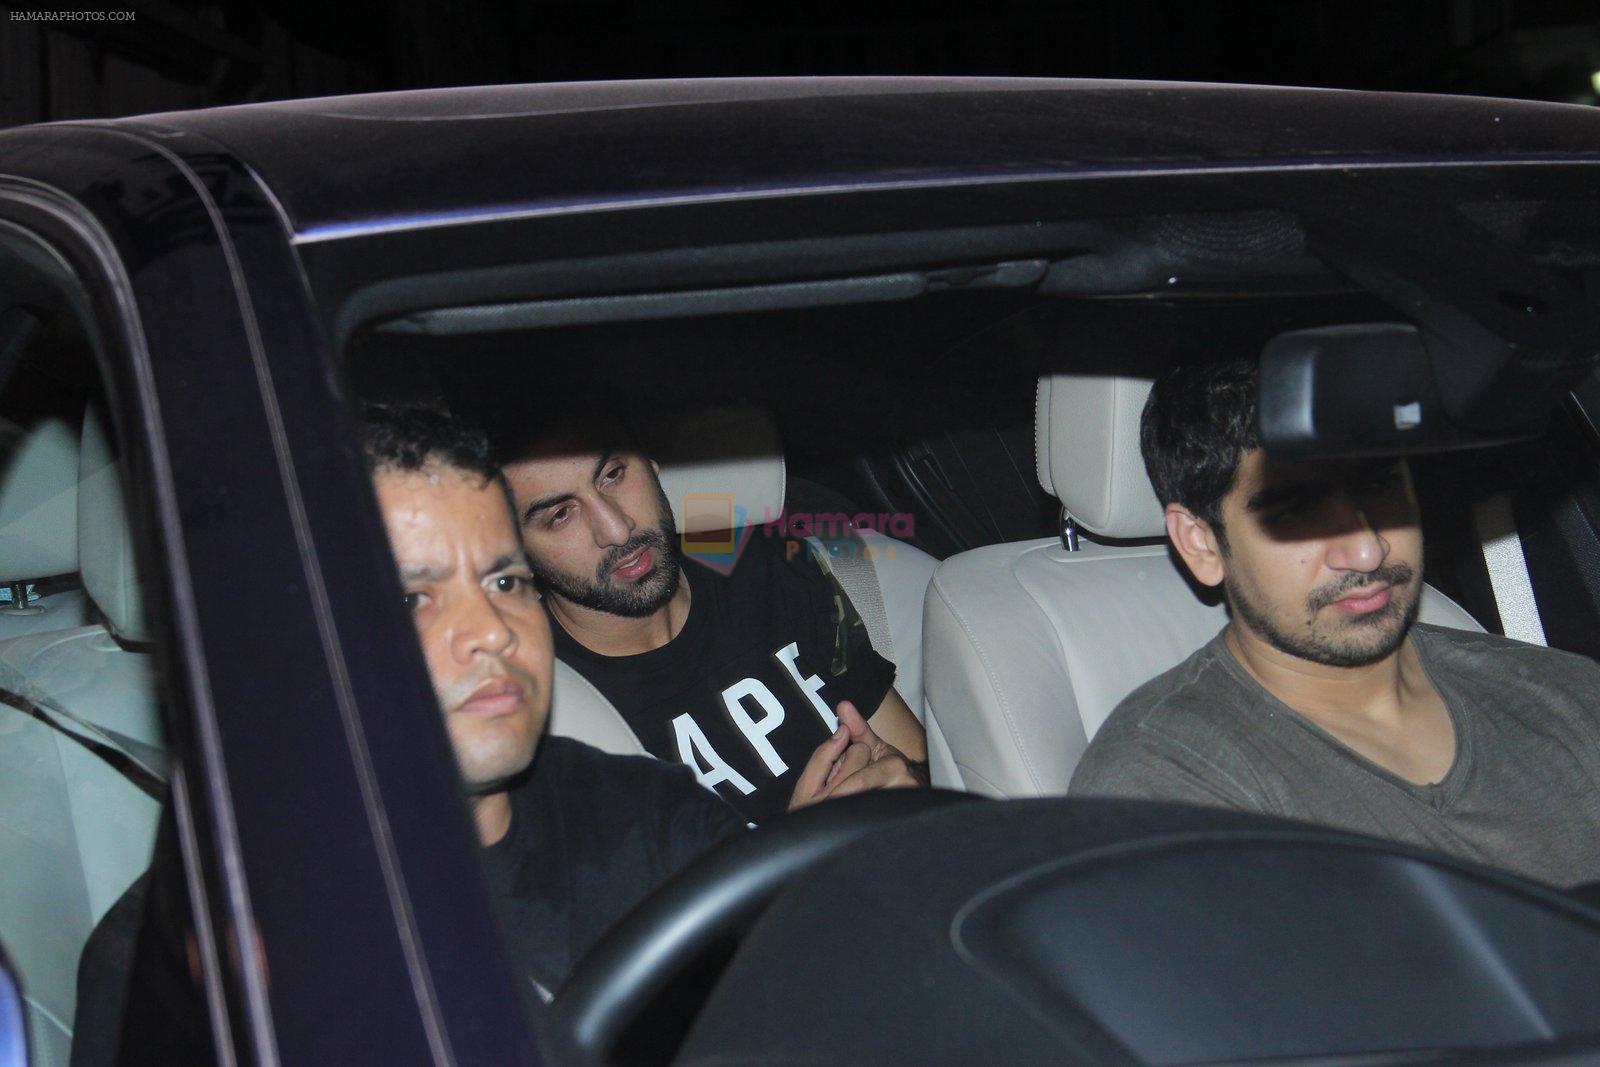 Karan Johar and Ranbir Kapoor came to meet Aamir Khan on 17th Nov 2015